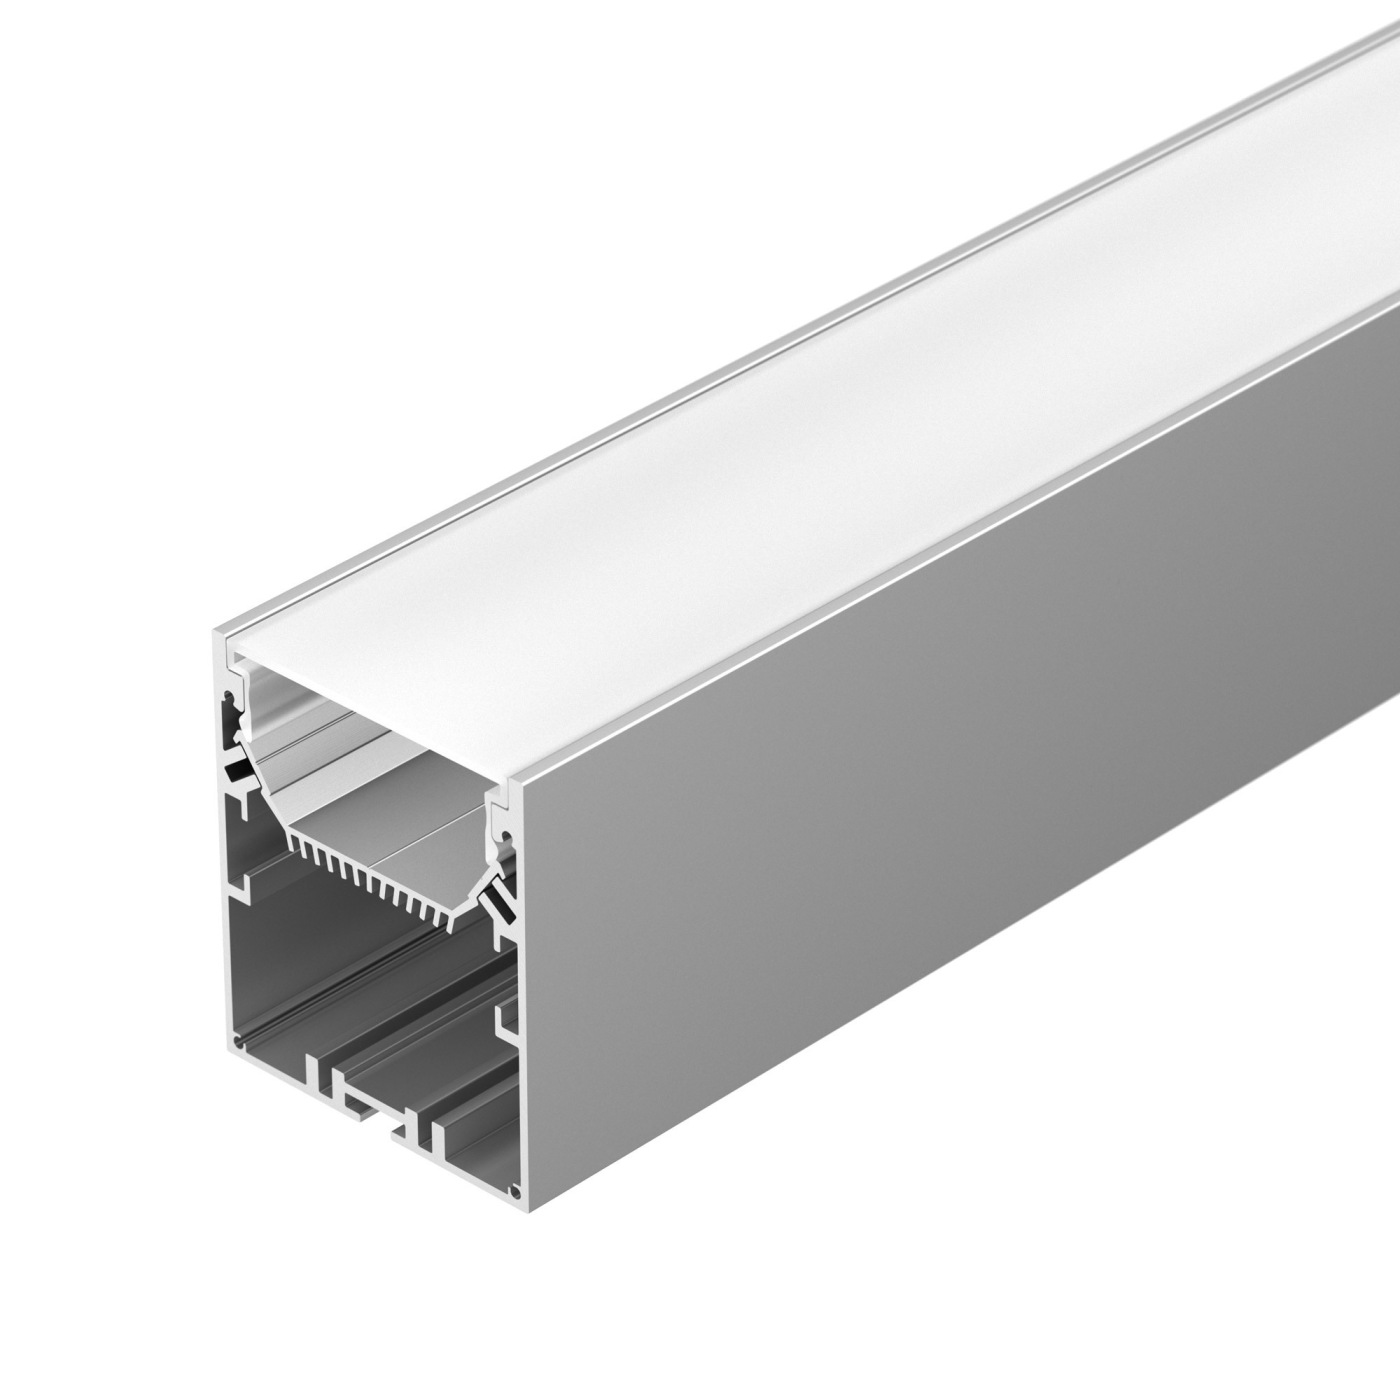 Профиль SL-LINE-6070-2000 ANOD профиль алюминиевый накладной подвесной с отсеком для бп серебро cab266